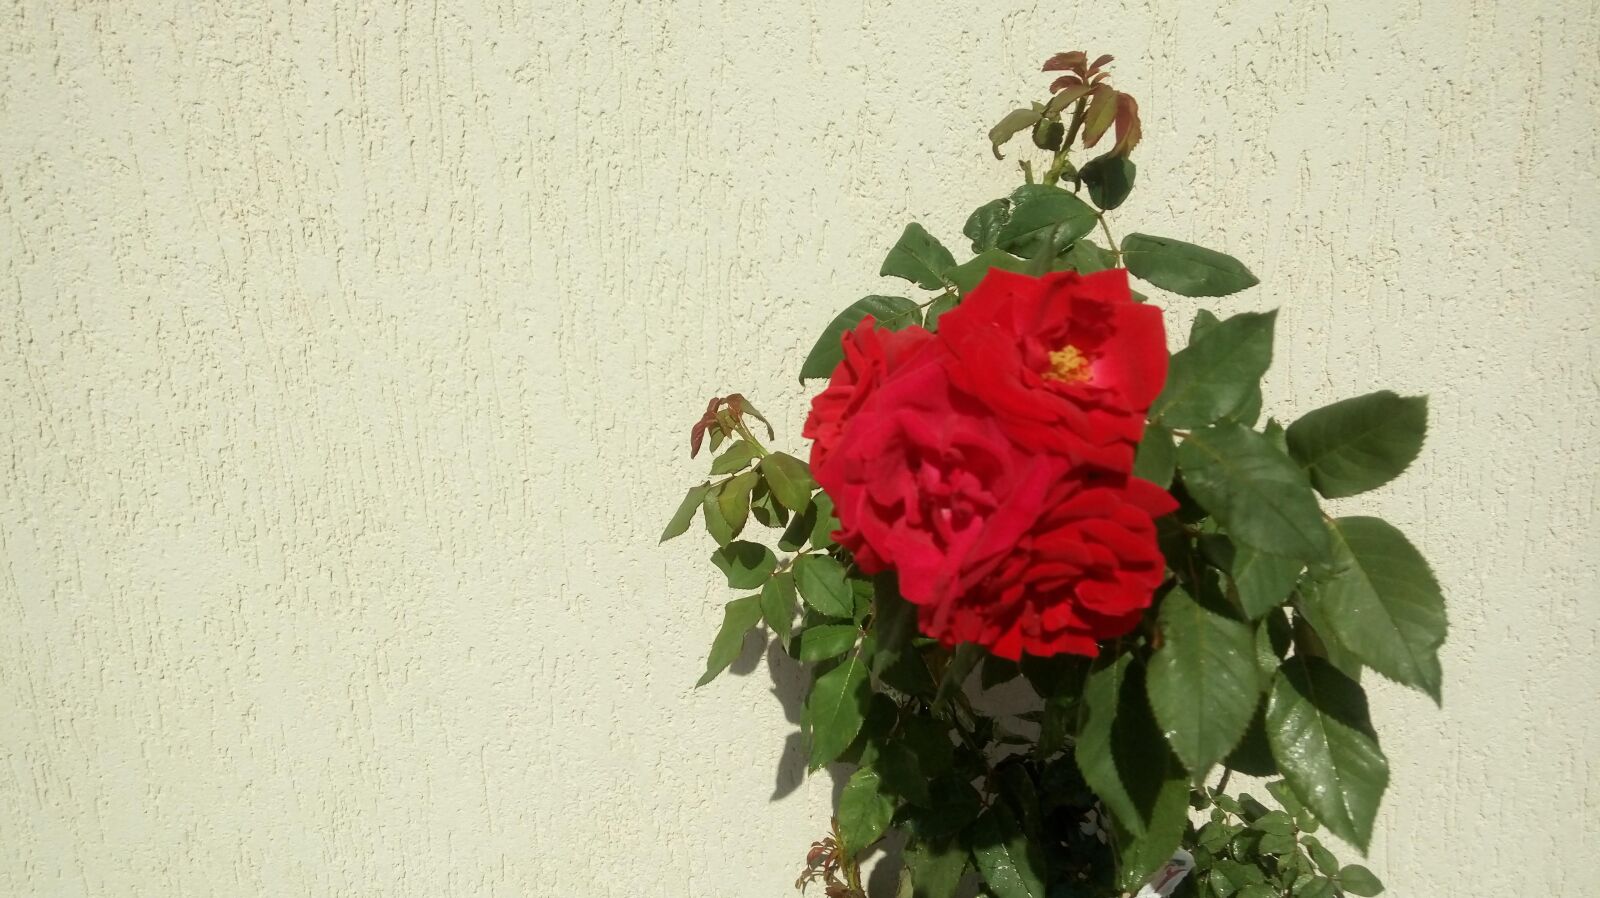 LG K430TV sample photo. Rosa, flower, garden photography